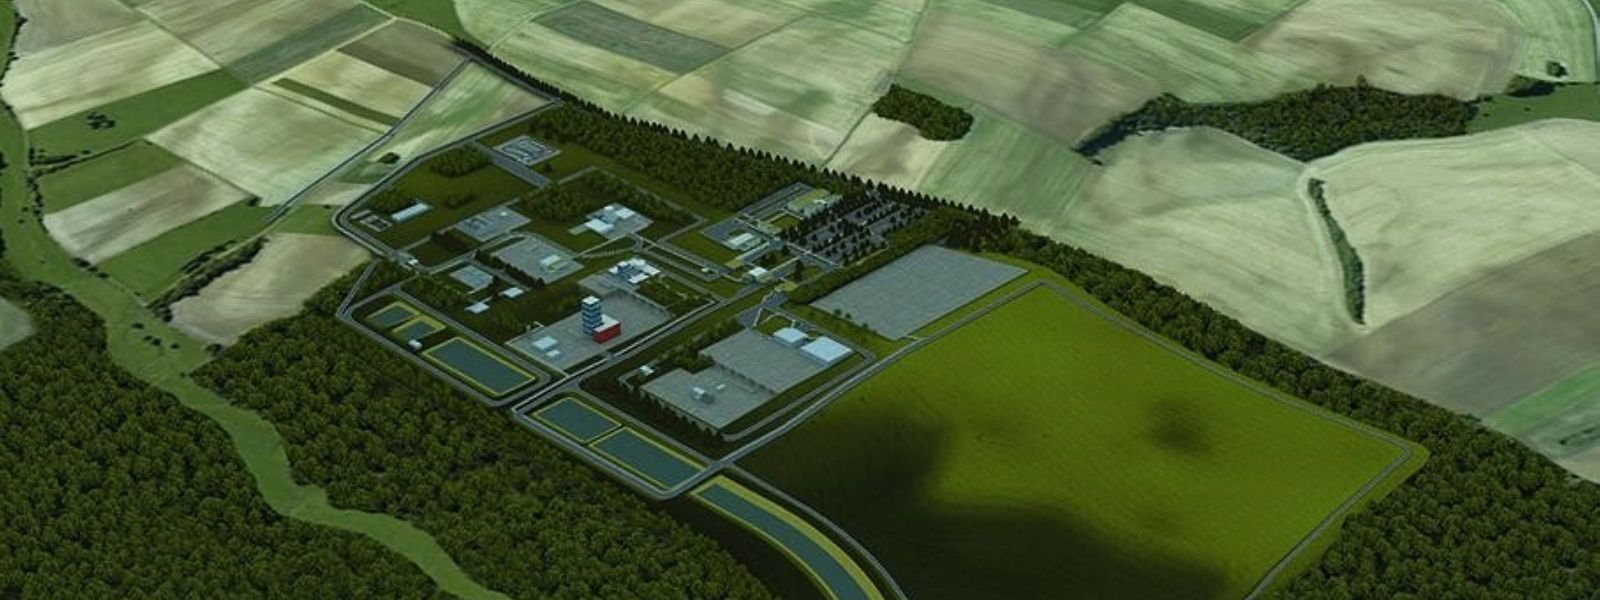 Le projet vise à enfouir, à 500 mètres sous terre, au moins 83.000 m3 des déchets les plus radioactifs du parc nucléaire français.